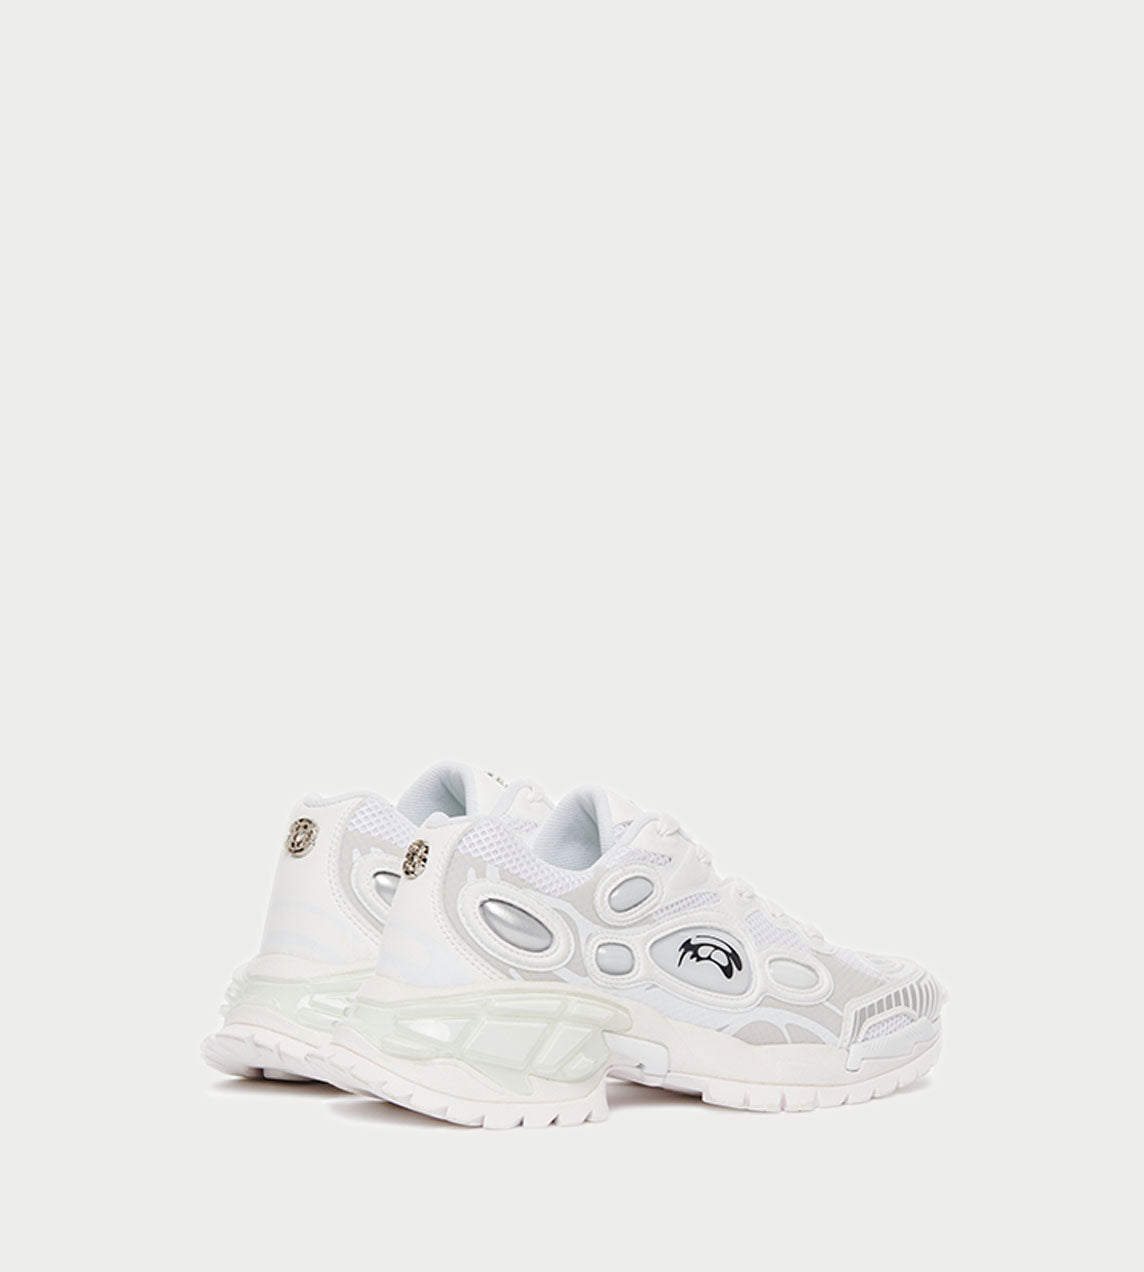 ROMBAUT - Nucleo Sneaker Volcanic White